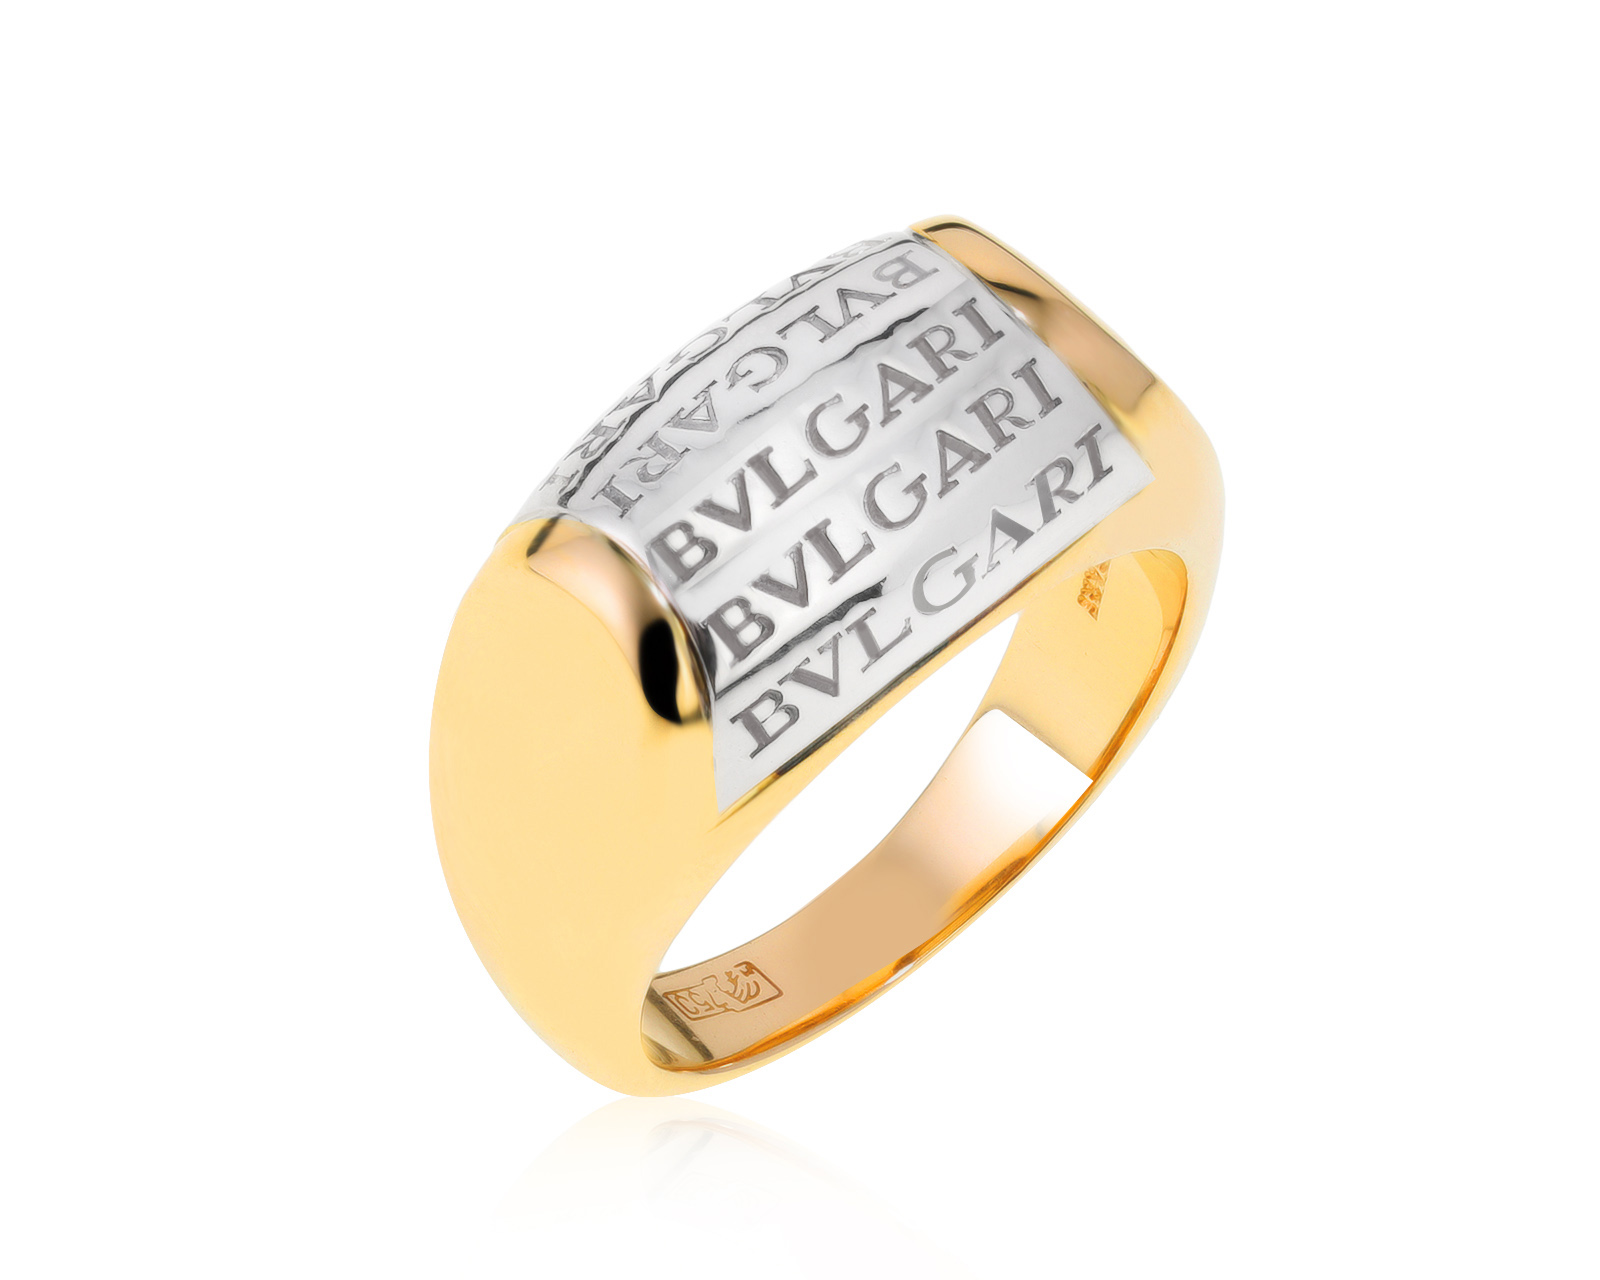 Оригинальное золотое кольцо Bvlgari Tronchetto